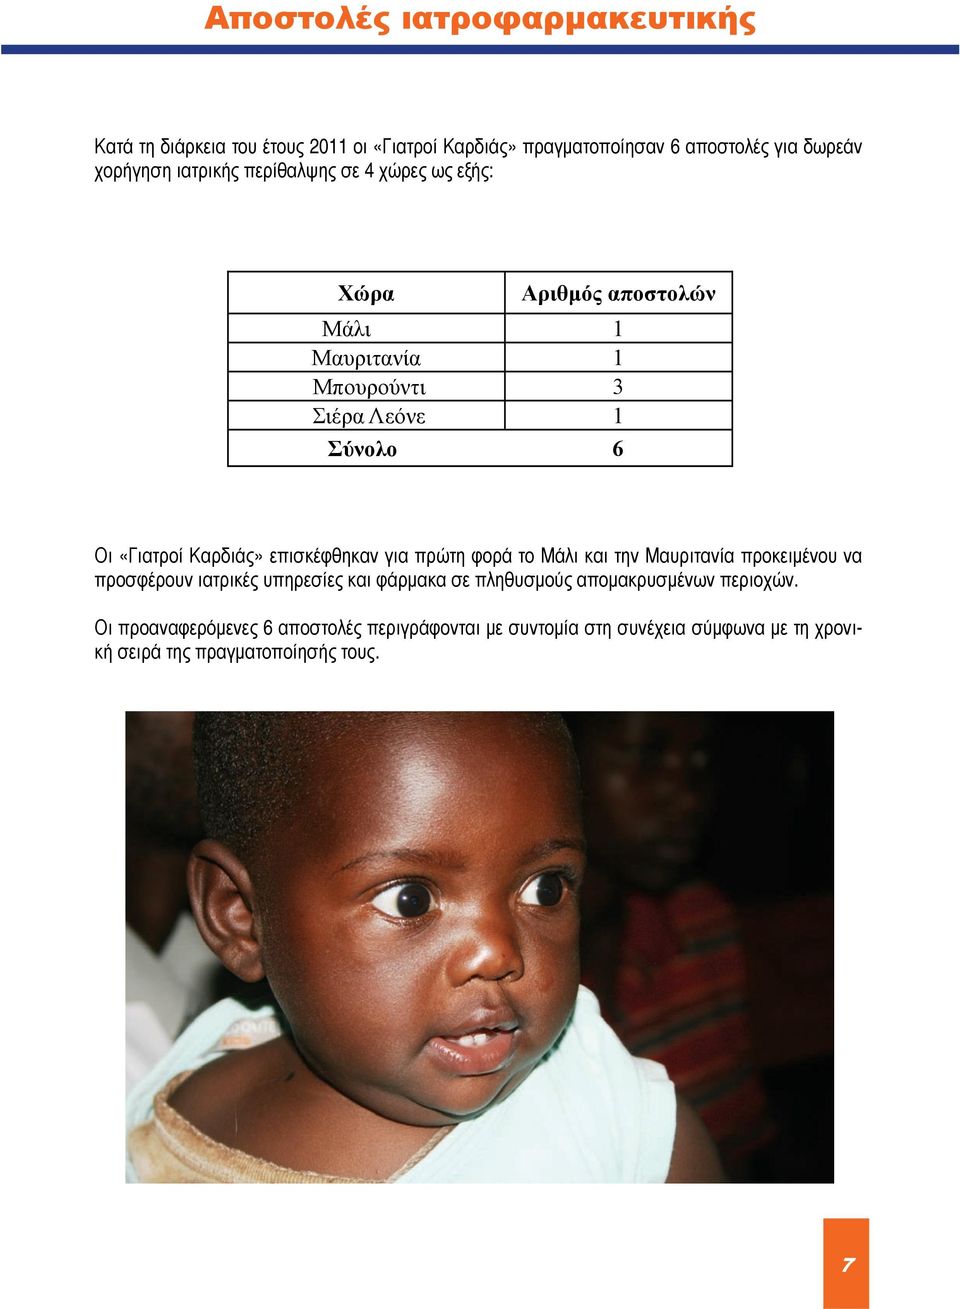 Καρδιάς» επισκέφθηκαν για πρώτη φορά το Μάλι και την Μαυριτανία προκειμένου να προσφέρουν ιατρικές υπηρεσίες και φάρμακα σε πληθυσμούς